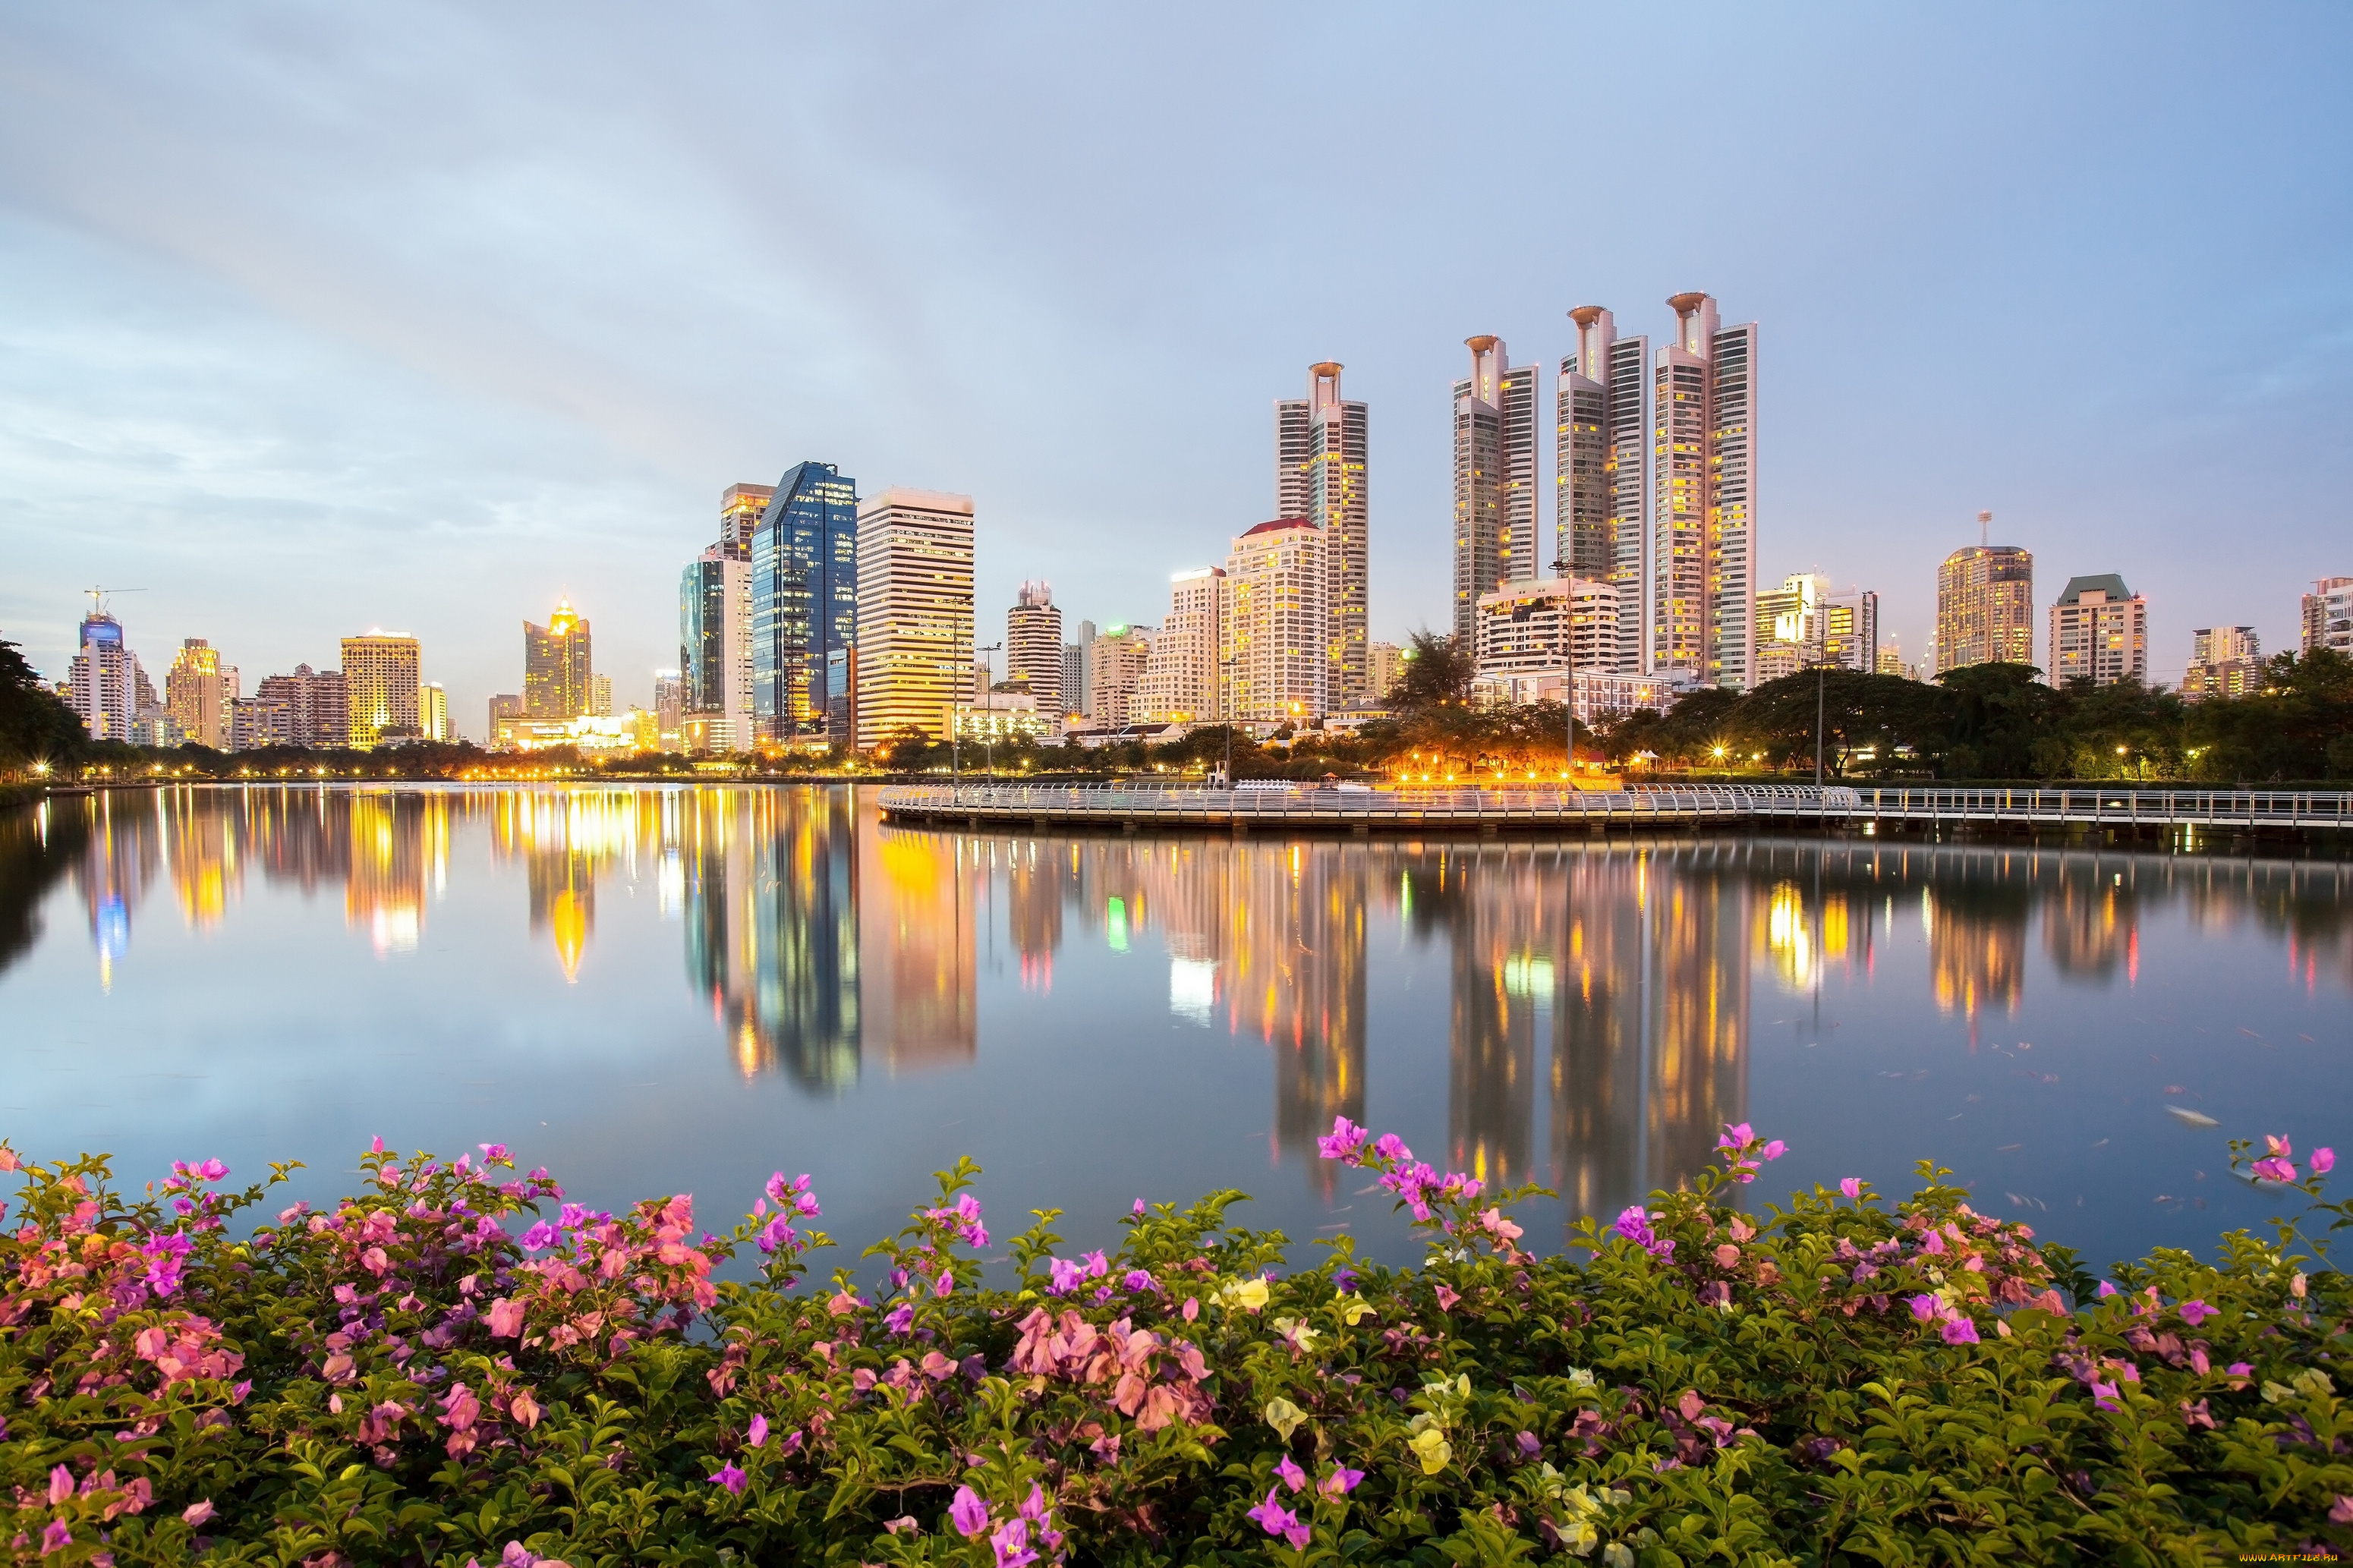 города, вода, отражение, парк, кусты, шиповник, здания, небоскрёбы, набережная, bangkok, thailand